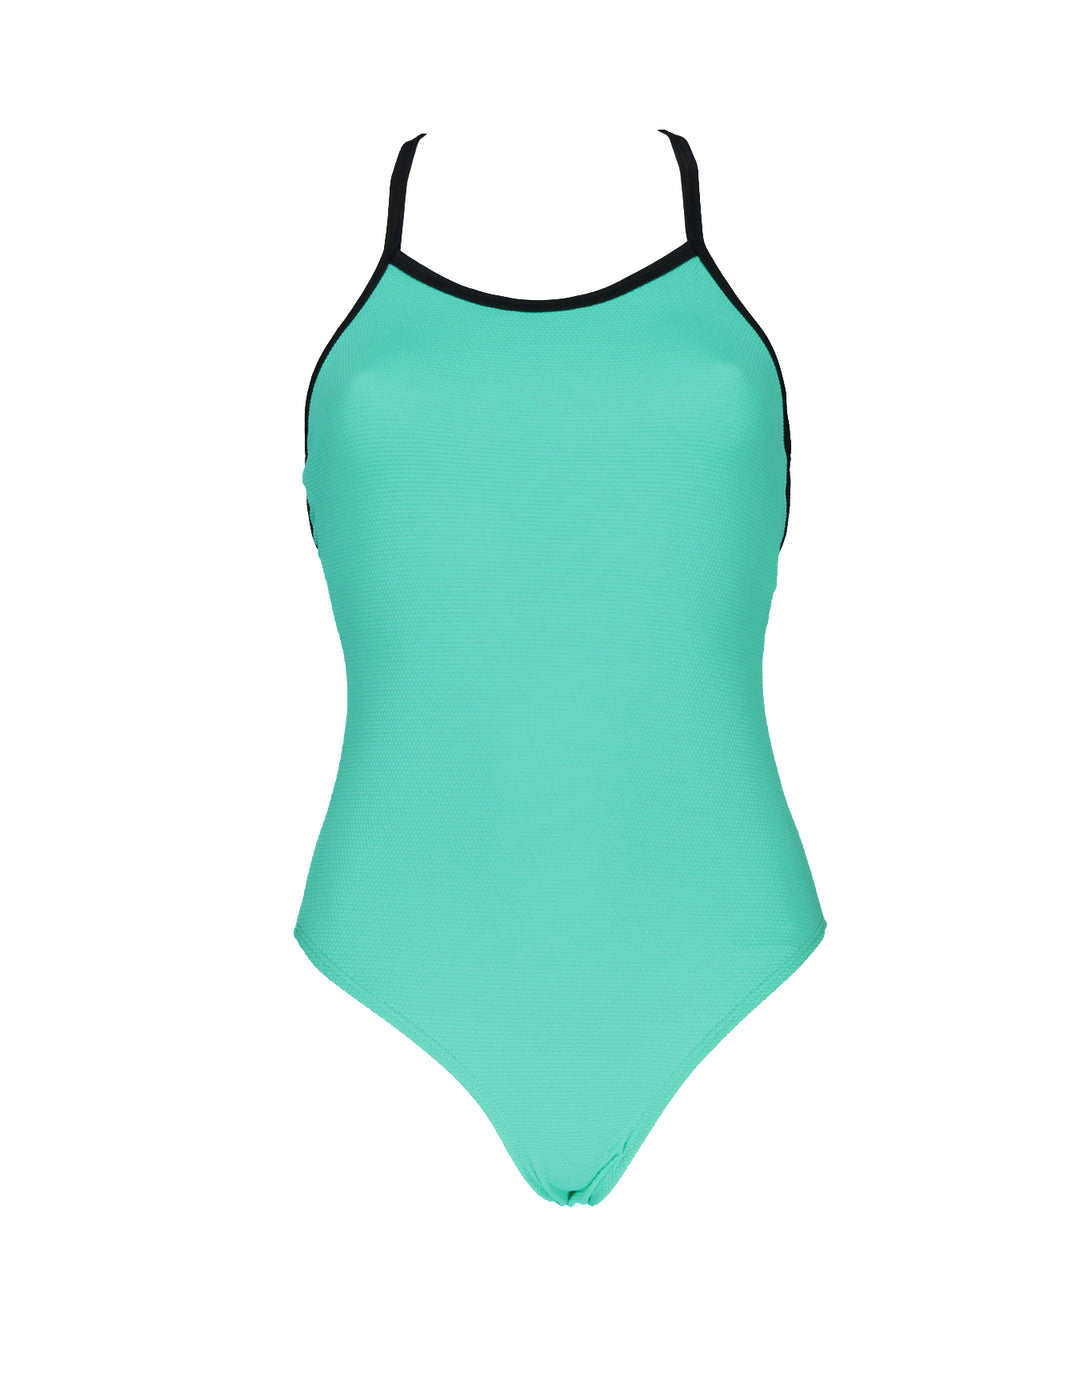 Swimsuit Women Textured Teal - سباح